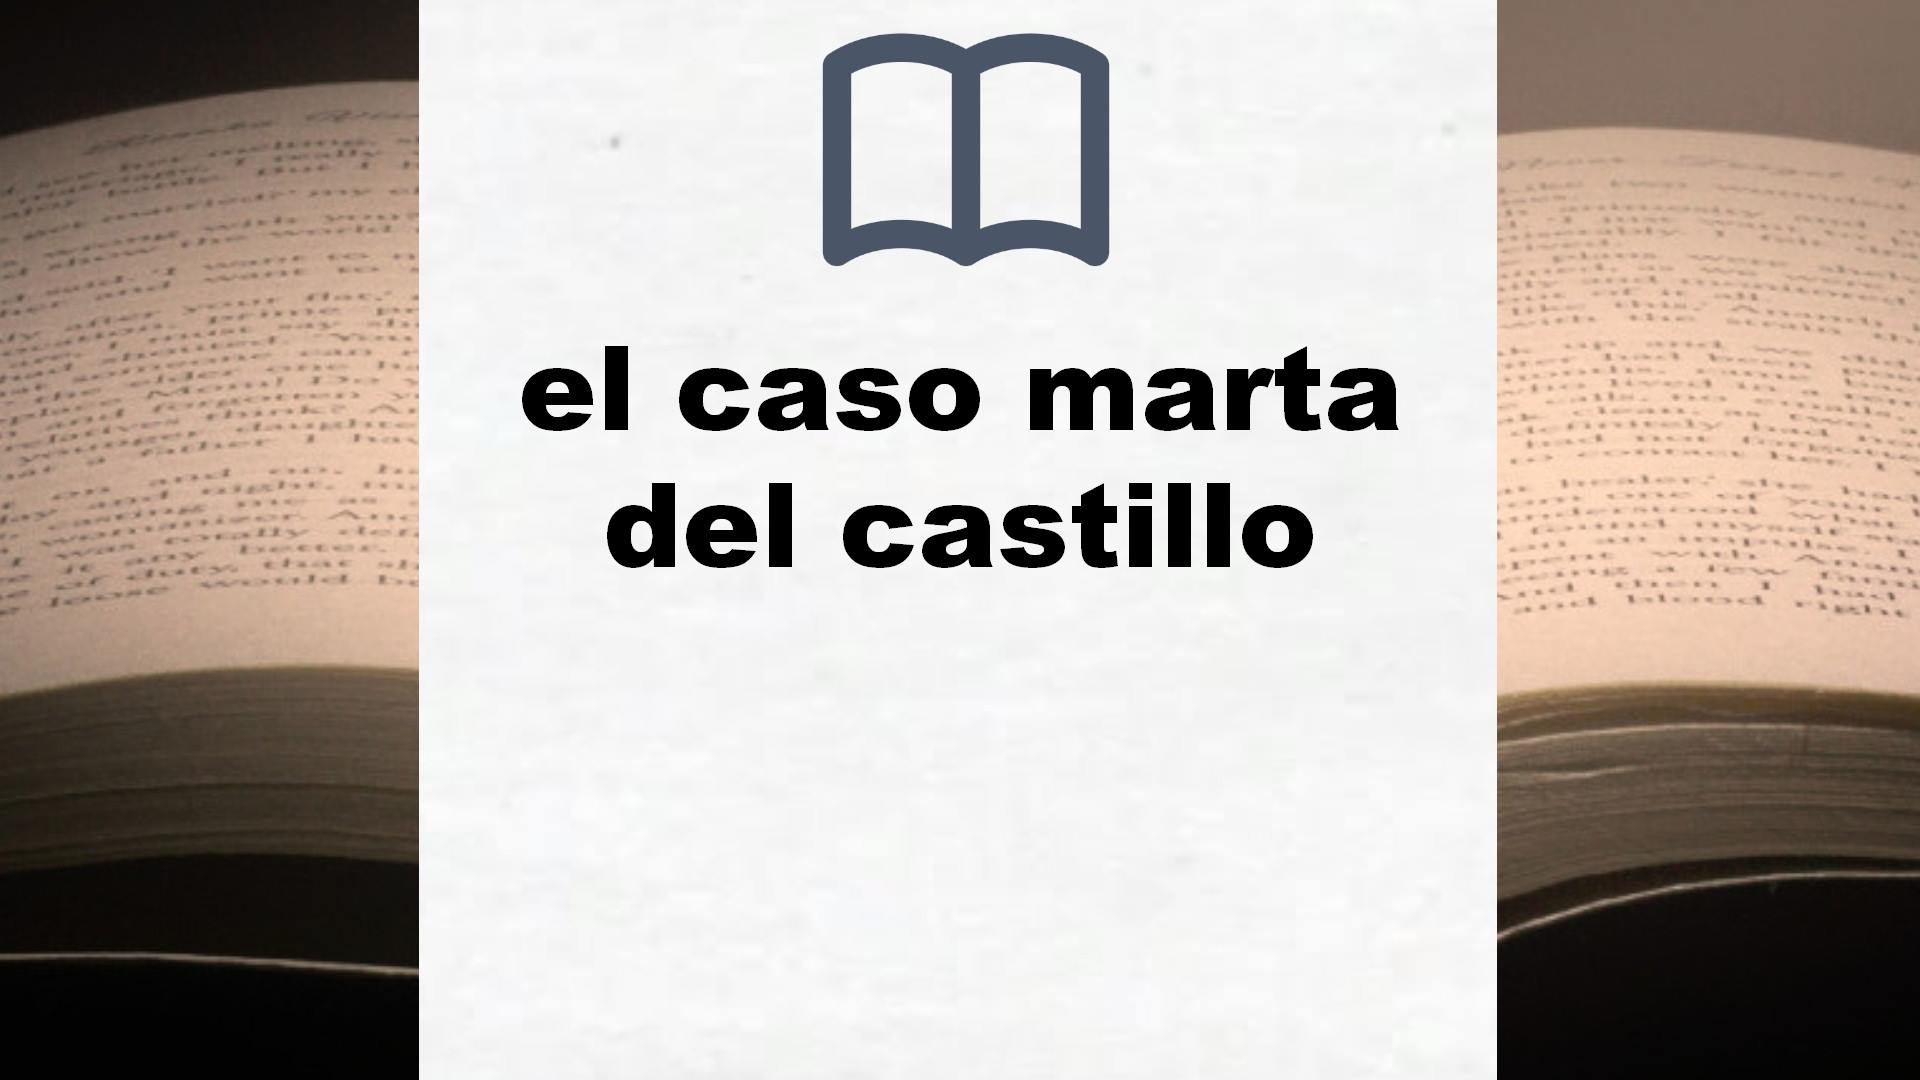 Libros sobre el caso marta del castillo